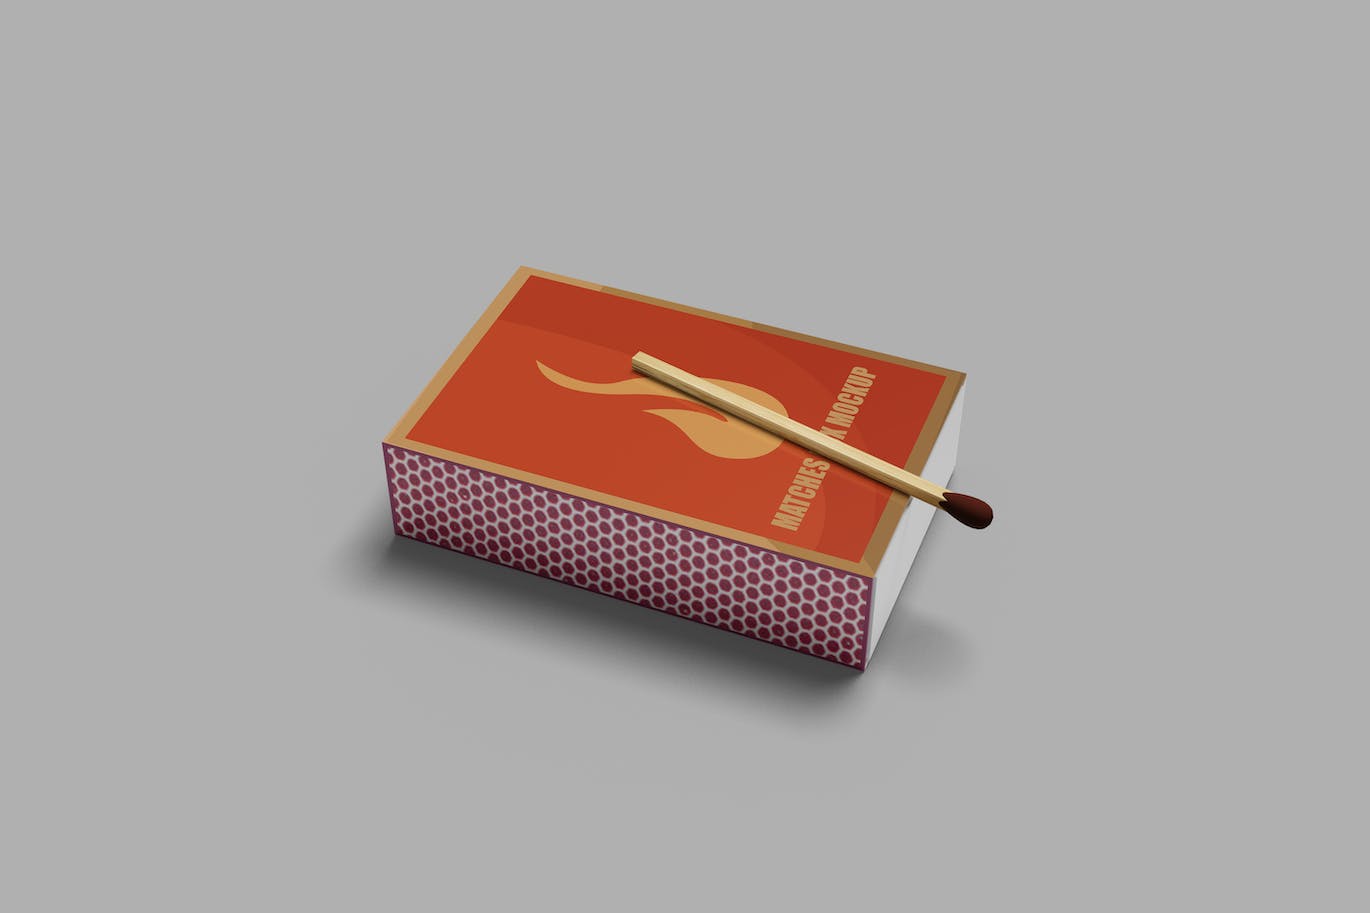 火柴盒纸盒设计样机 Matches Box Mockup 样机素材 第1张